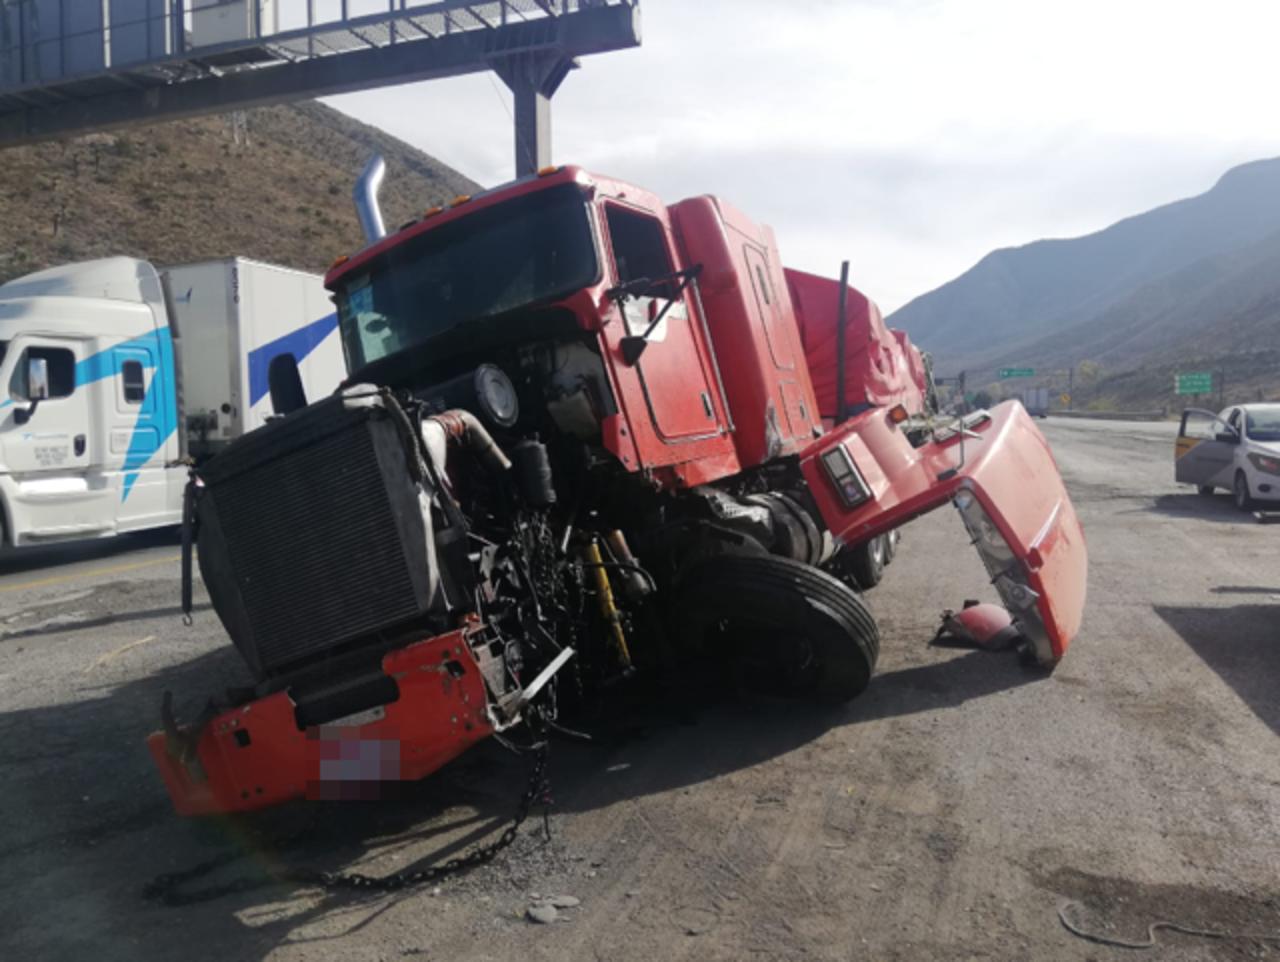 Nuevo accidente se registra en Los Chorros de Coahuila